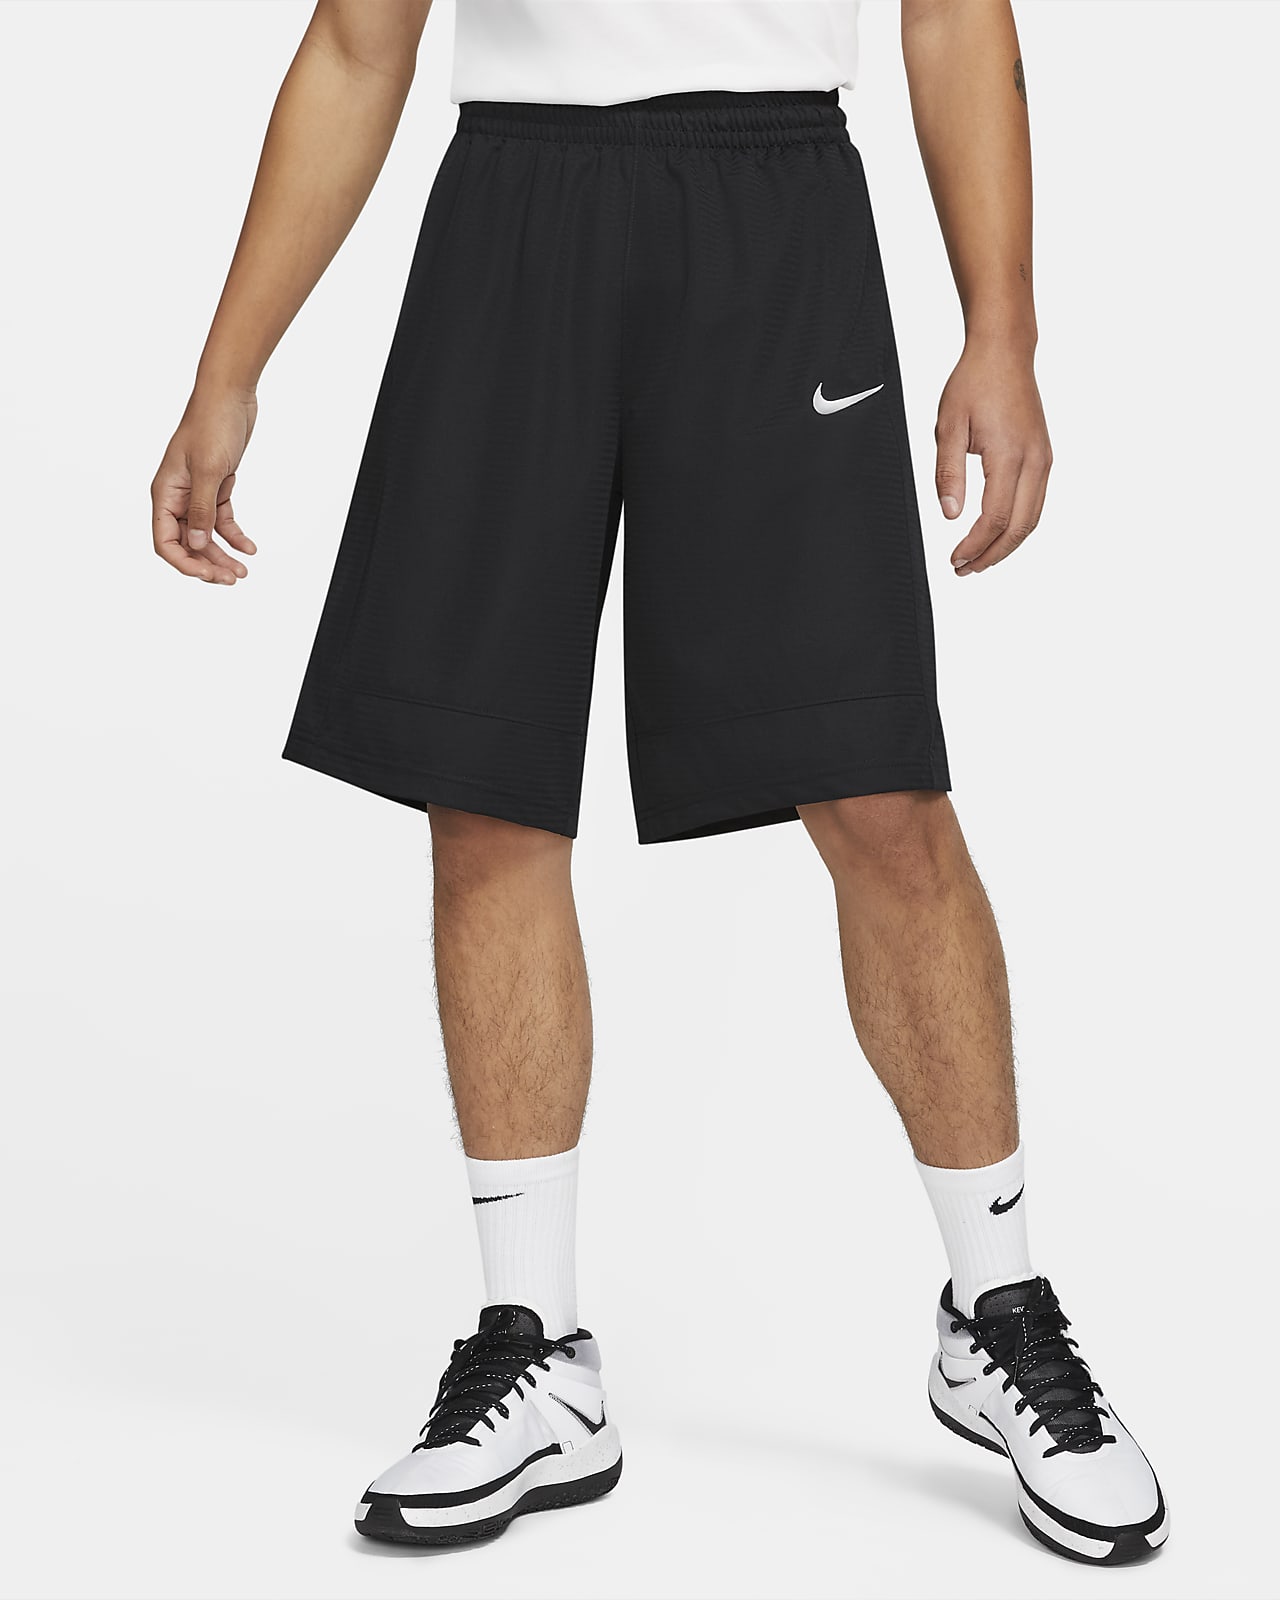 nike basketball under shorts